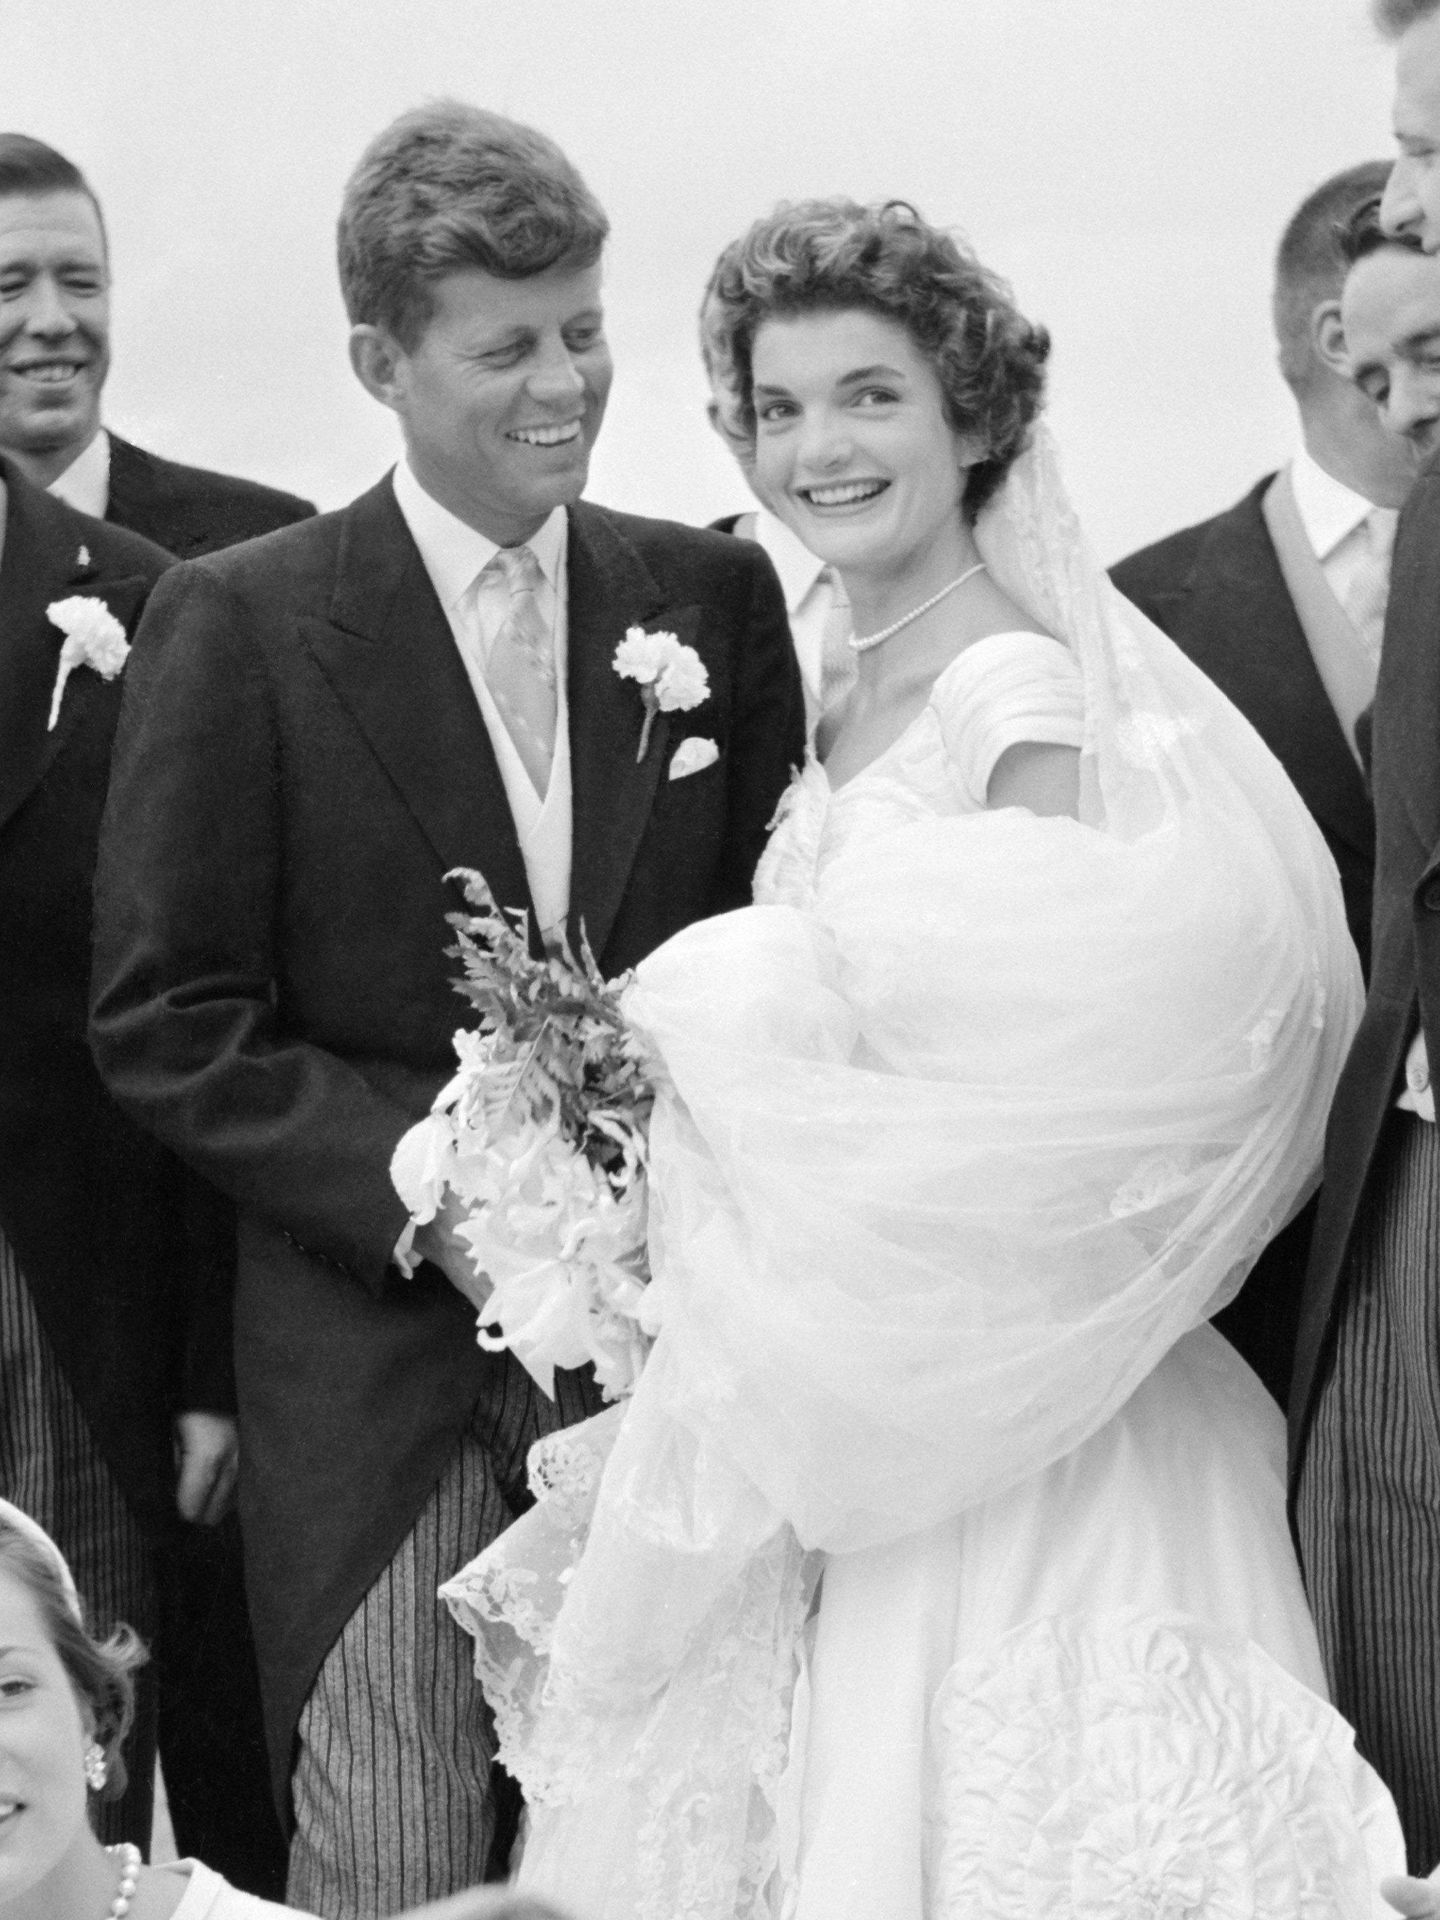 La boda de John y Jacqueline Kennedy se celebró el 12 de septiembre de 1953. (Cordon Press)